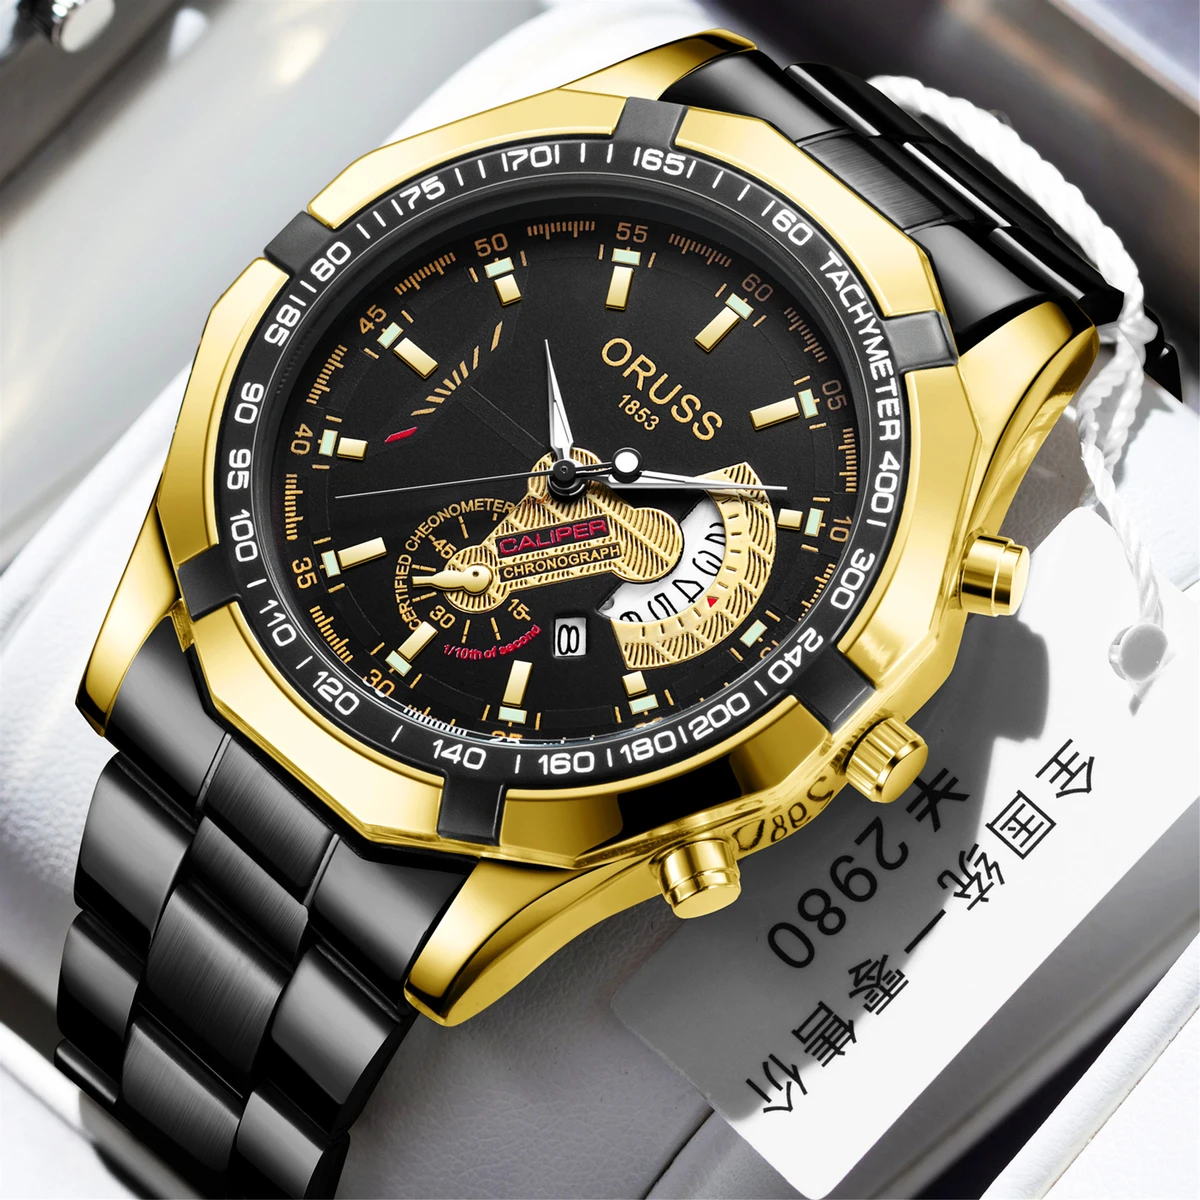 Oruss Luxury Men Watches Business Top Brand Man Wristwatch Waterproof Luminous Date Quartz Men's Watch High Quality- Black & Golden